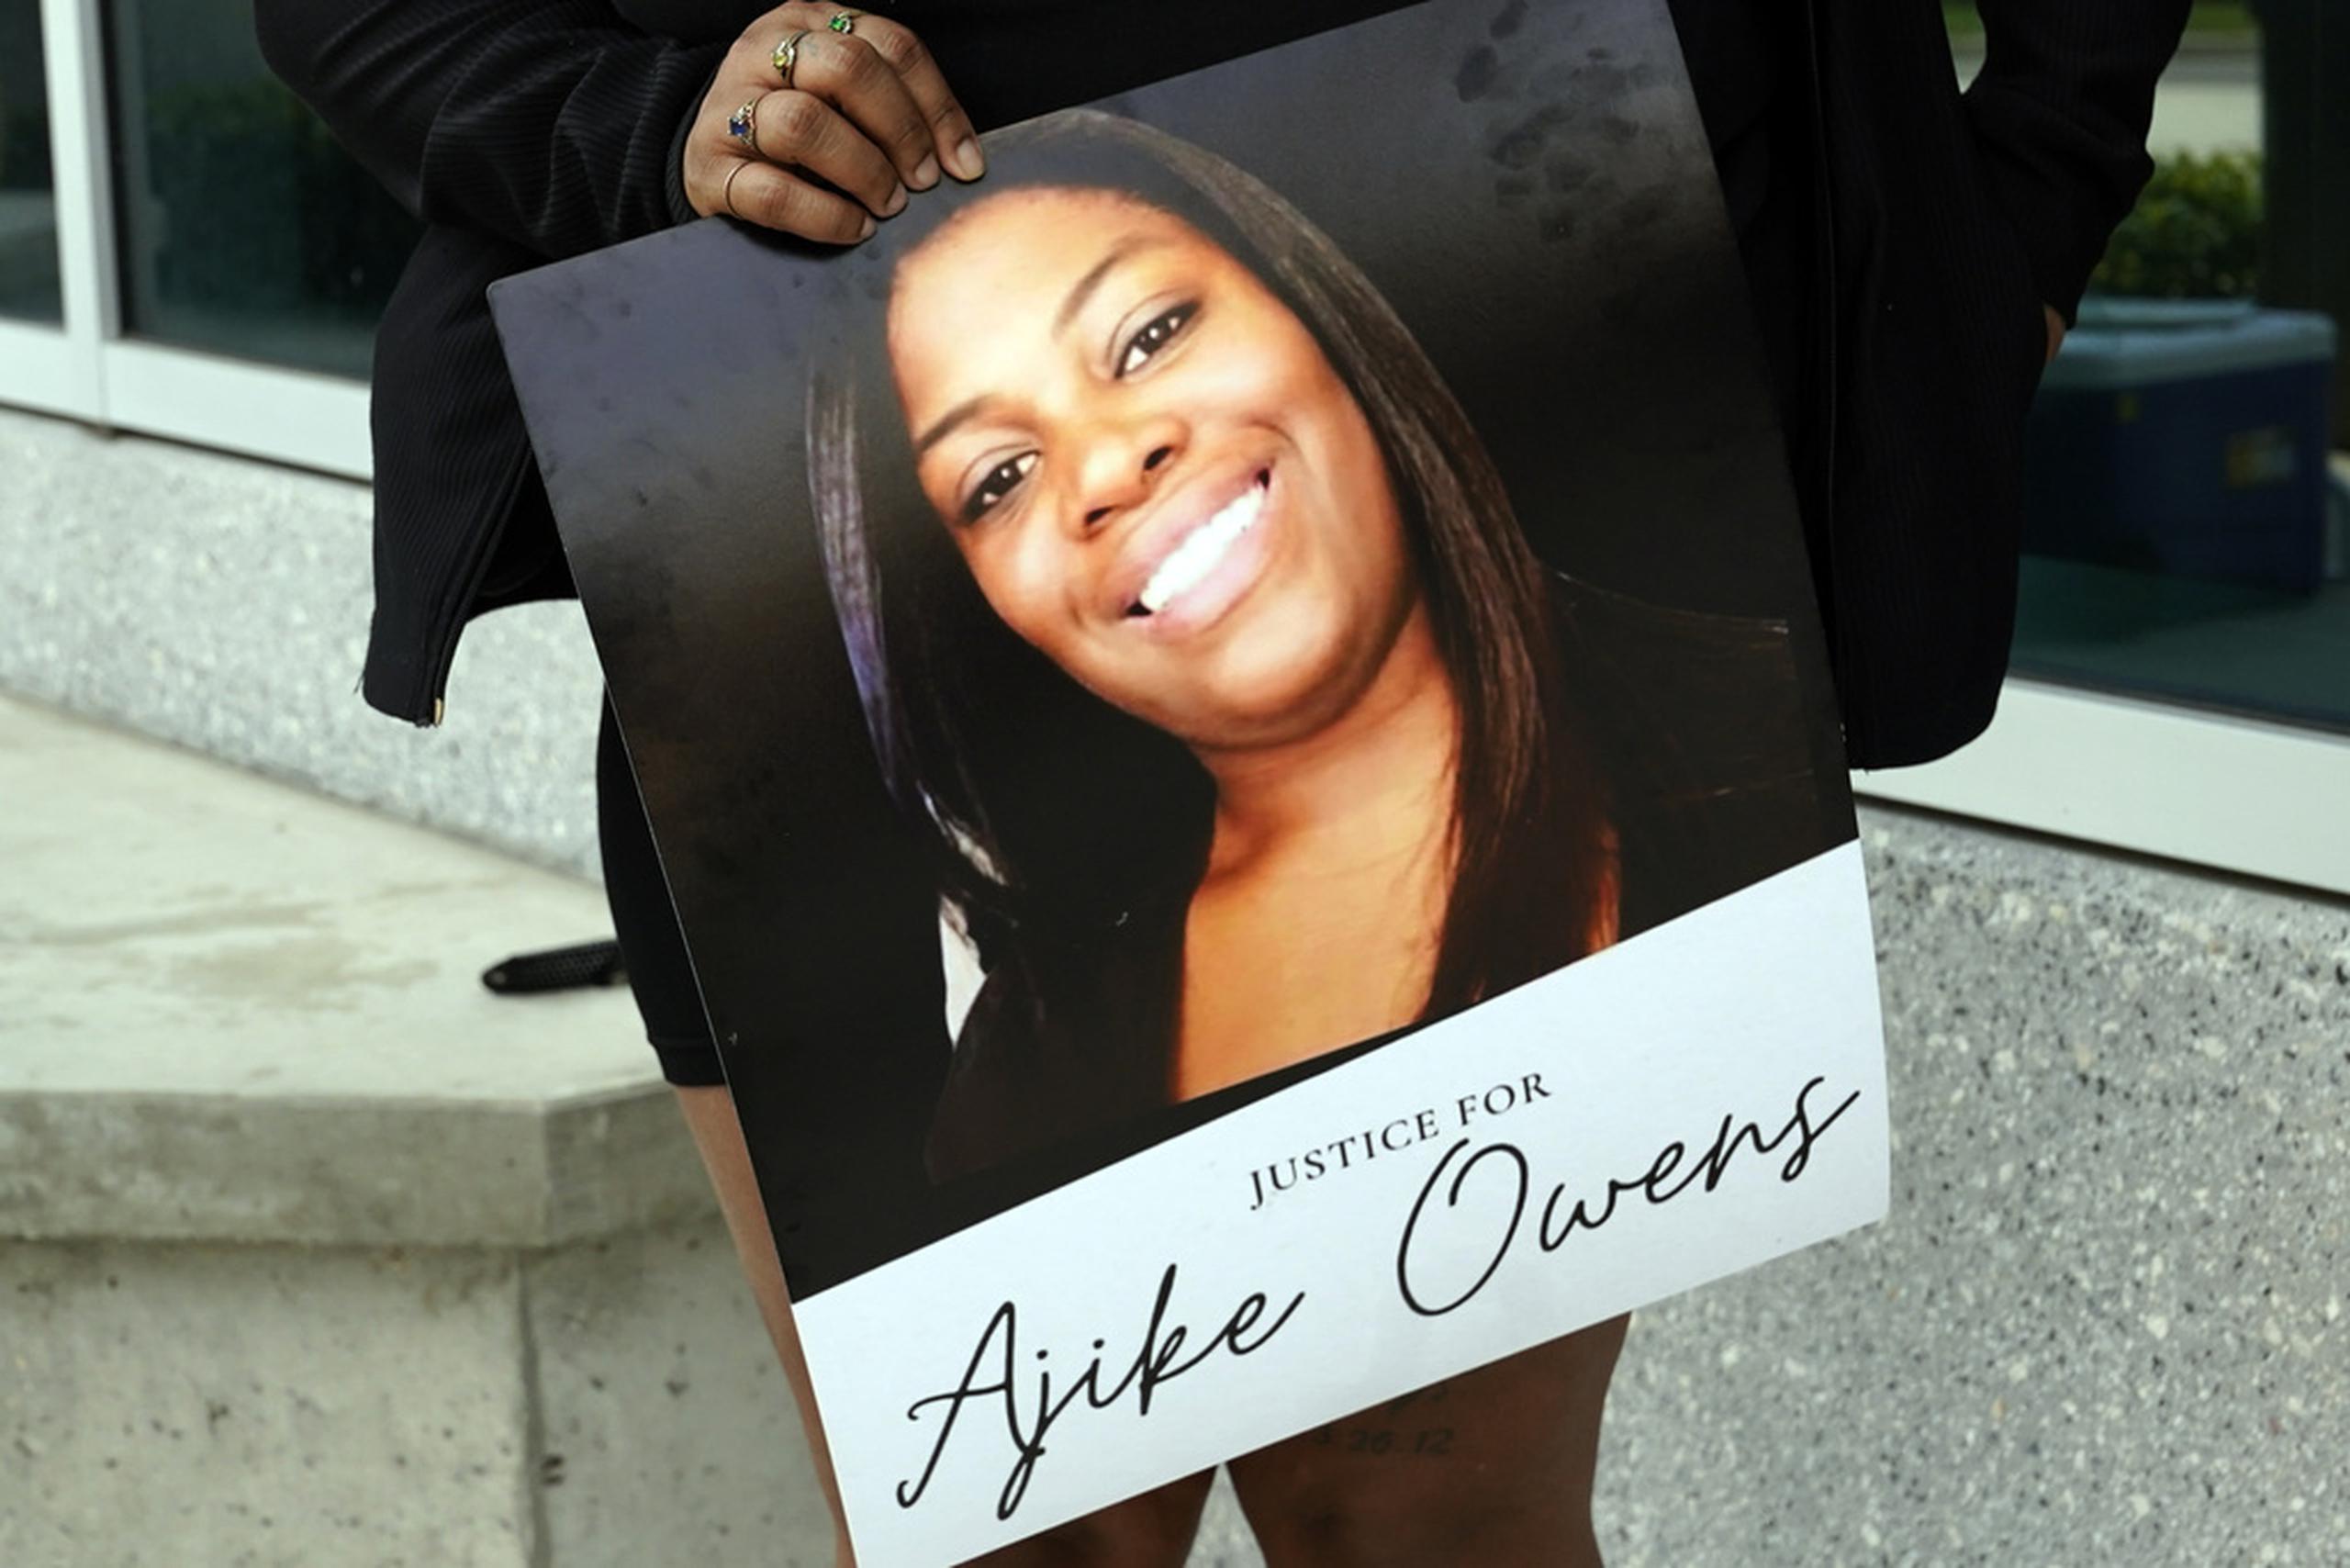 Después de manifestaciones y reclamos de la comunidad para que se hiciera “justicia” por la muerte de Ajike Owens, la policía informó de la detención de Susan Lorincz el pasado miércoles.